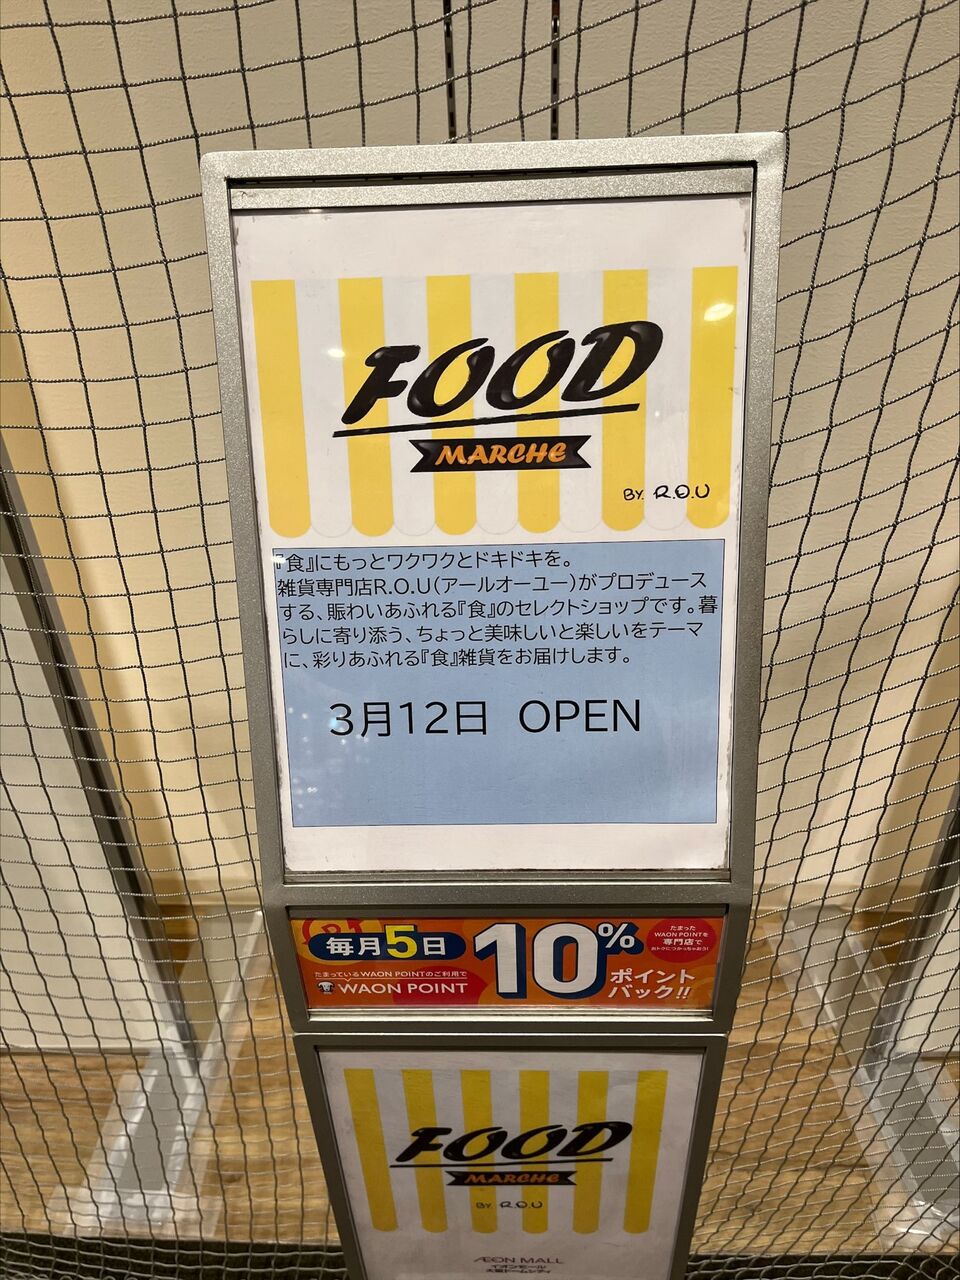 開店予告 イオンモール大阪ドームシティの3fで Food Marche が3月12日に新しく出来るみたい 大阪つーしん 大阪市の地域情報サイト